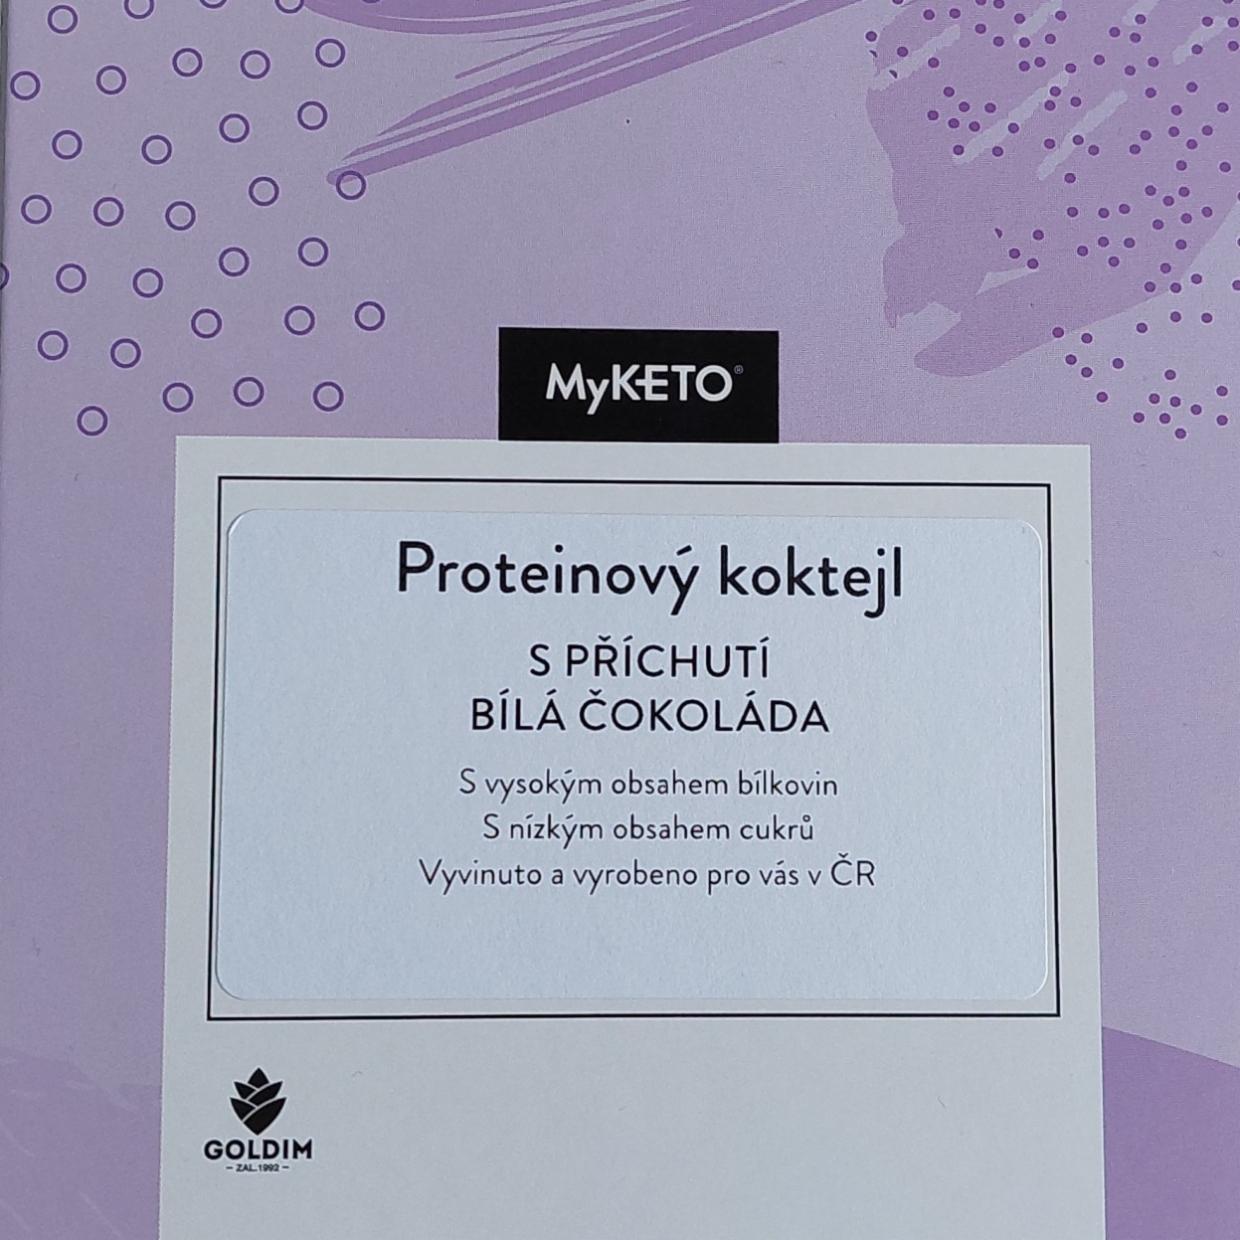 Fotografie - Proteinový koktejl s příchutí bílá čokoláda MyKeto